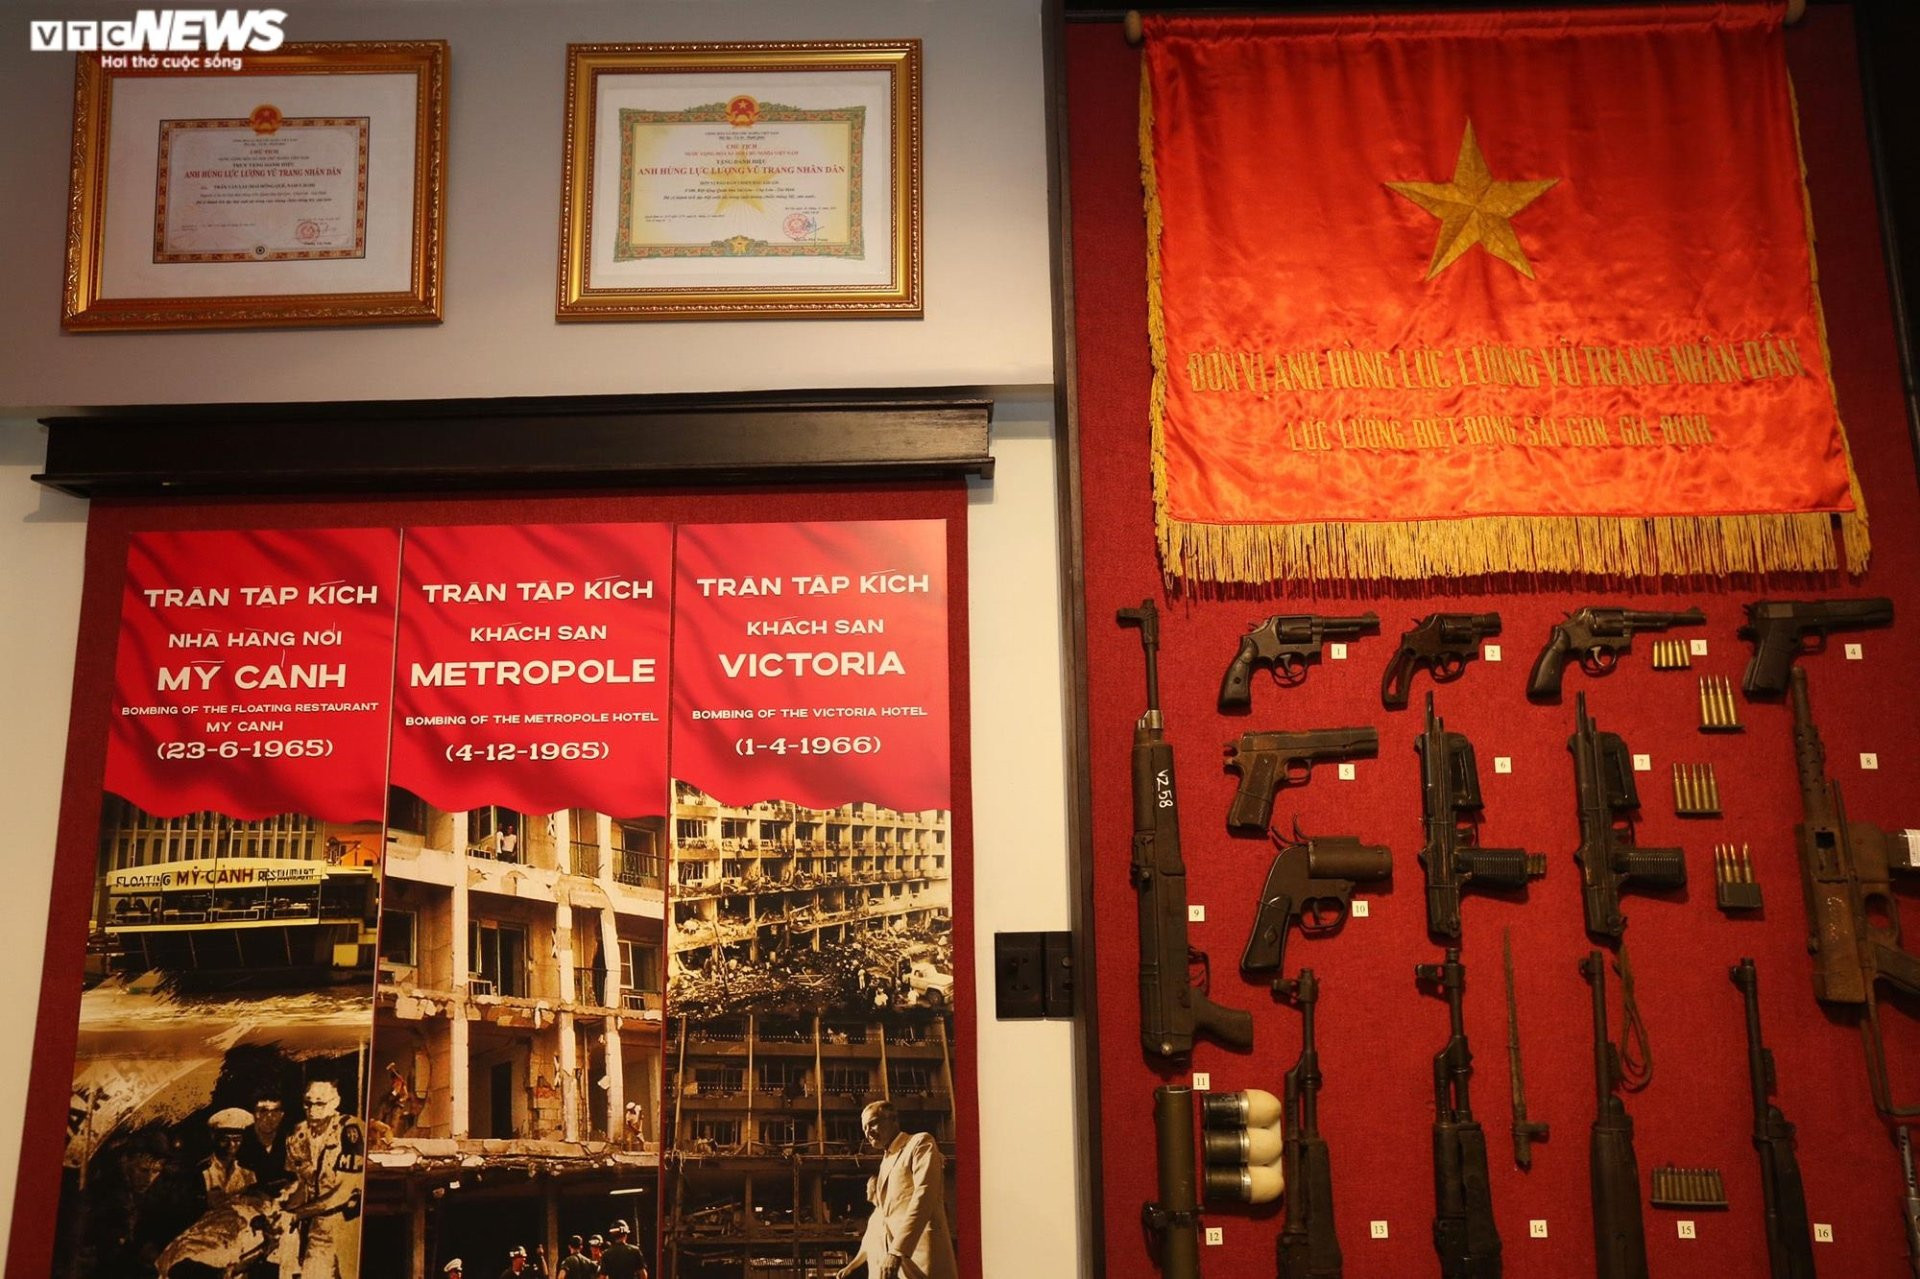 Ngắm hiện vật ở bảo tàng đầu tiên về lực lượng Biệt động Sài Gòn - Gia Định - 10